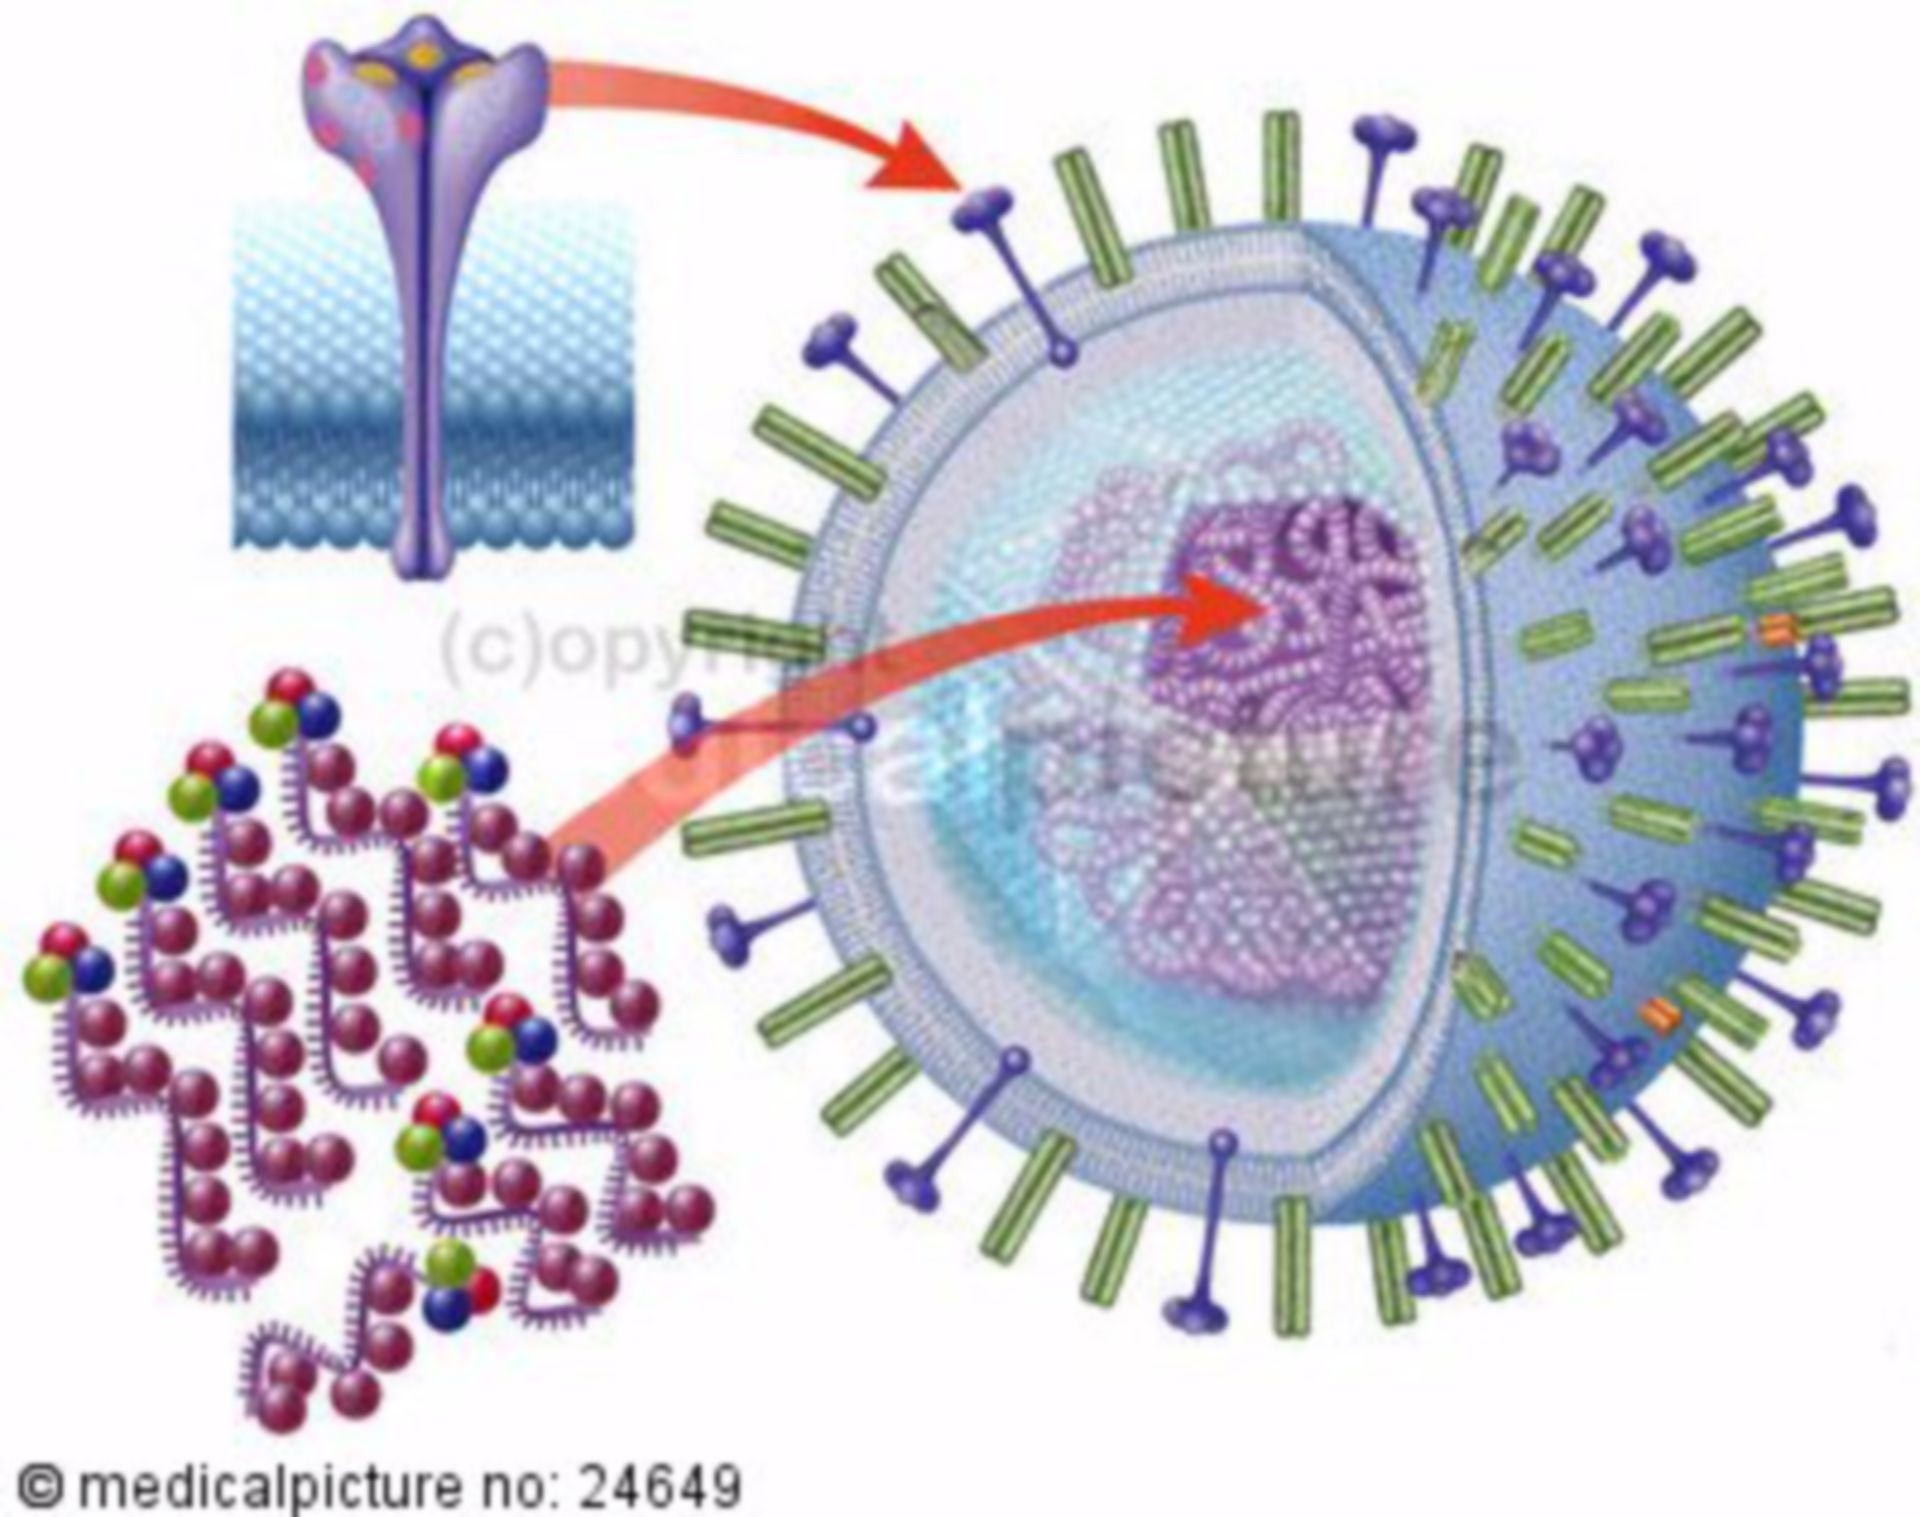  Aufbau eines Influenza Virus mit RNA 
